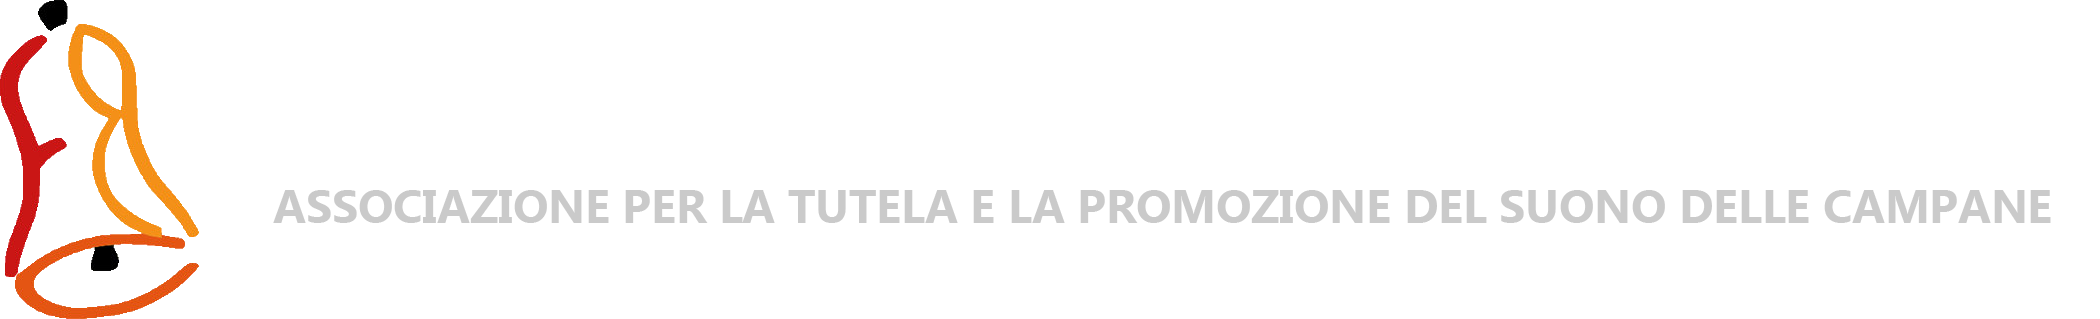 Federazione Campanari Bergamaschi